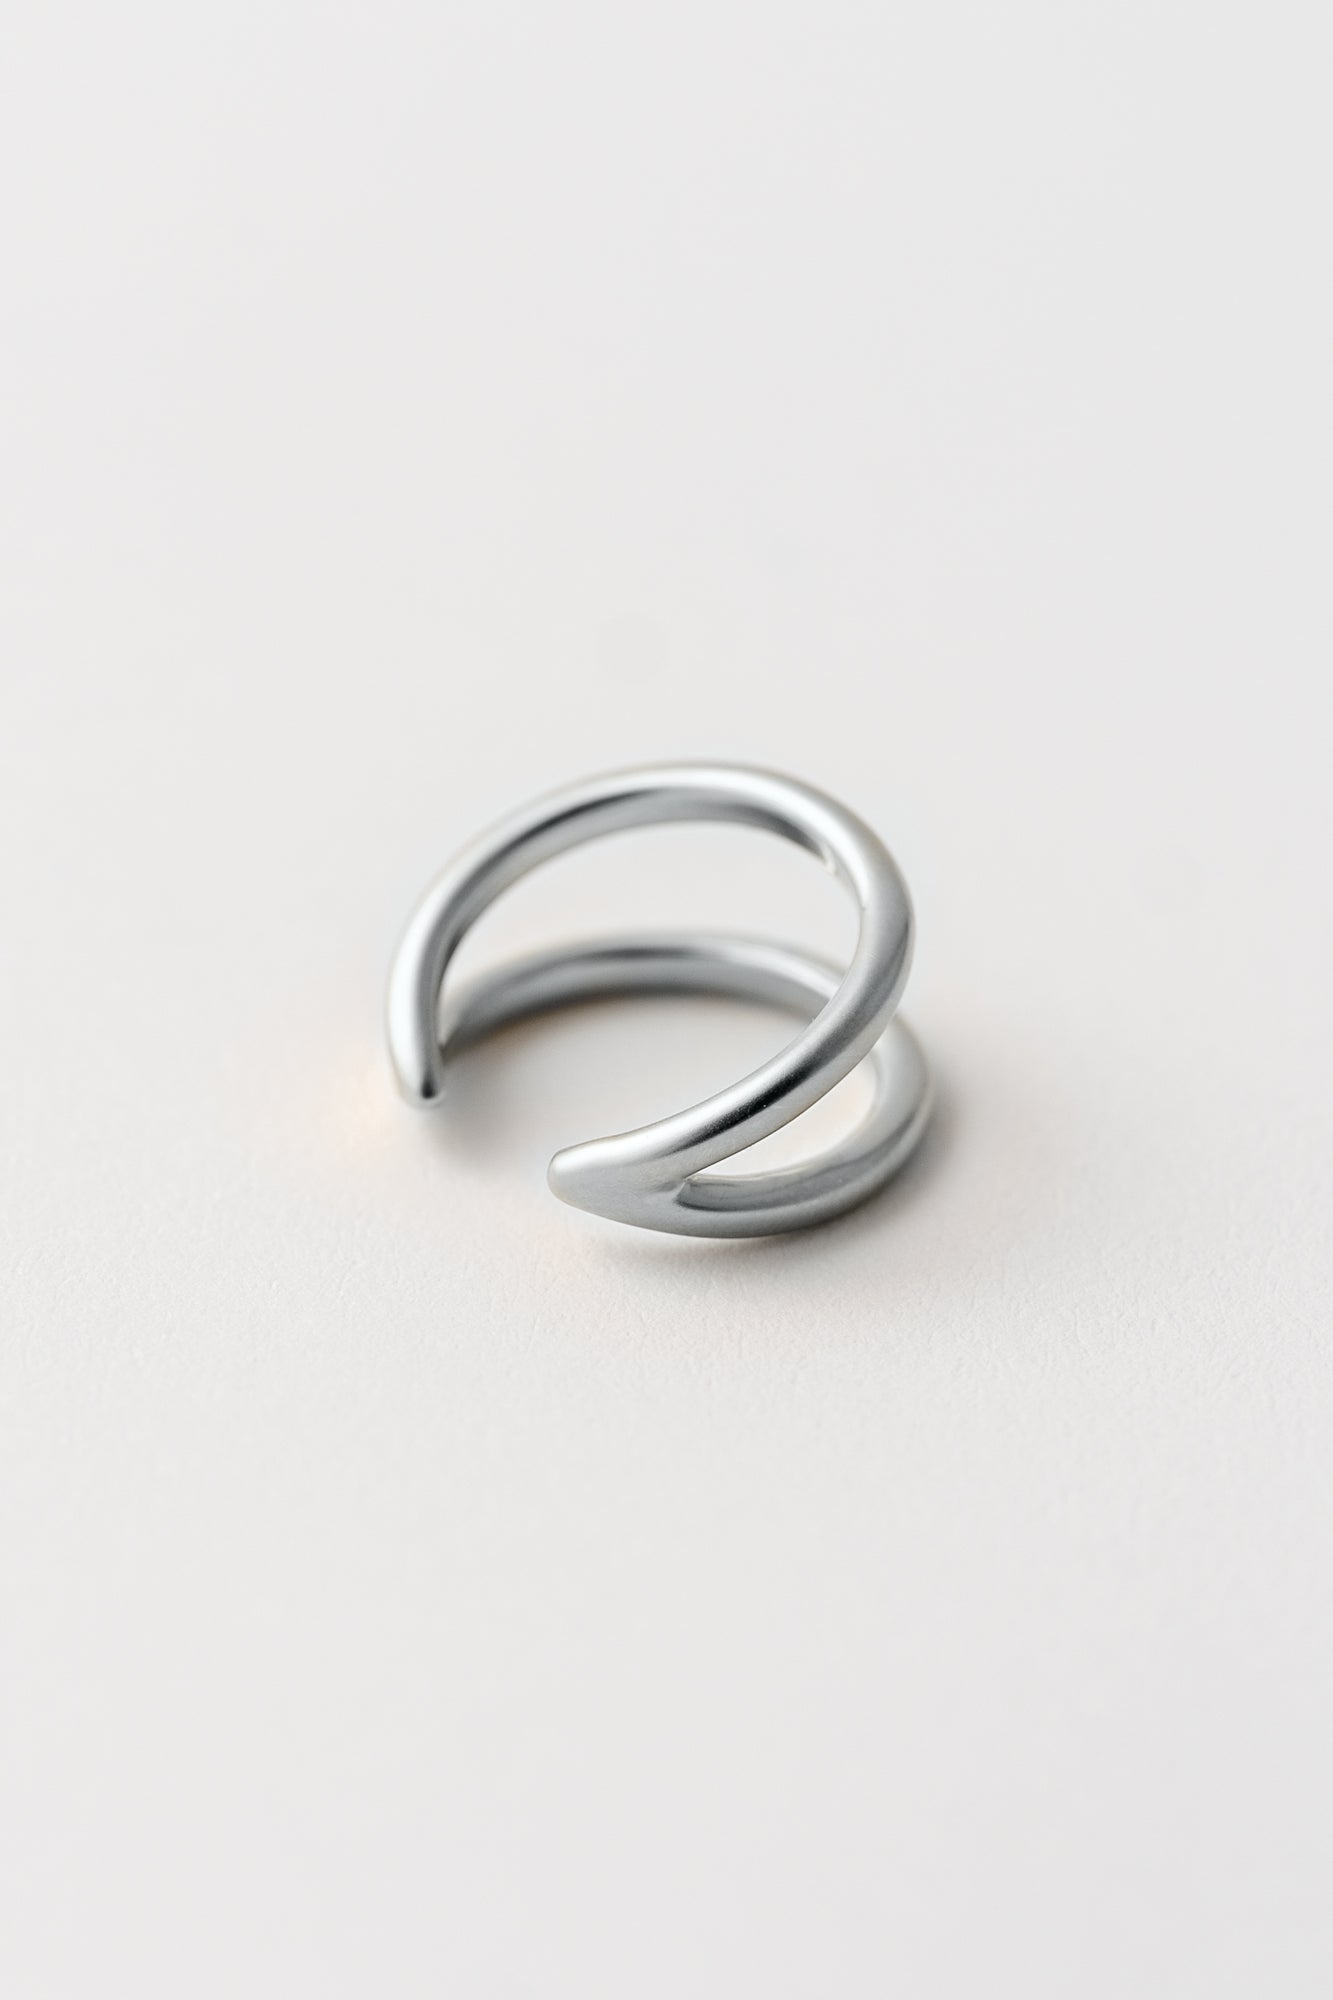 silberner Ring auf weißem Hintergrund